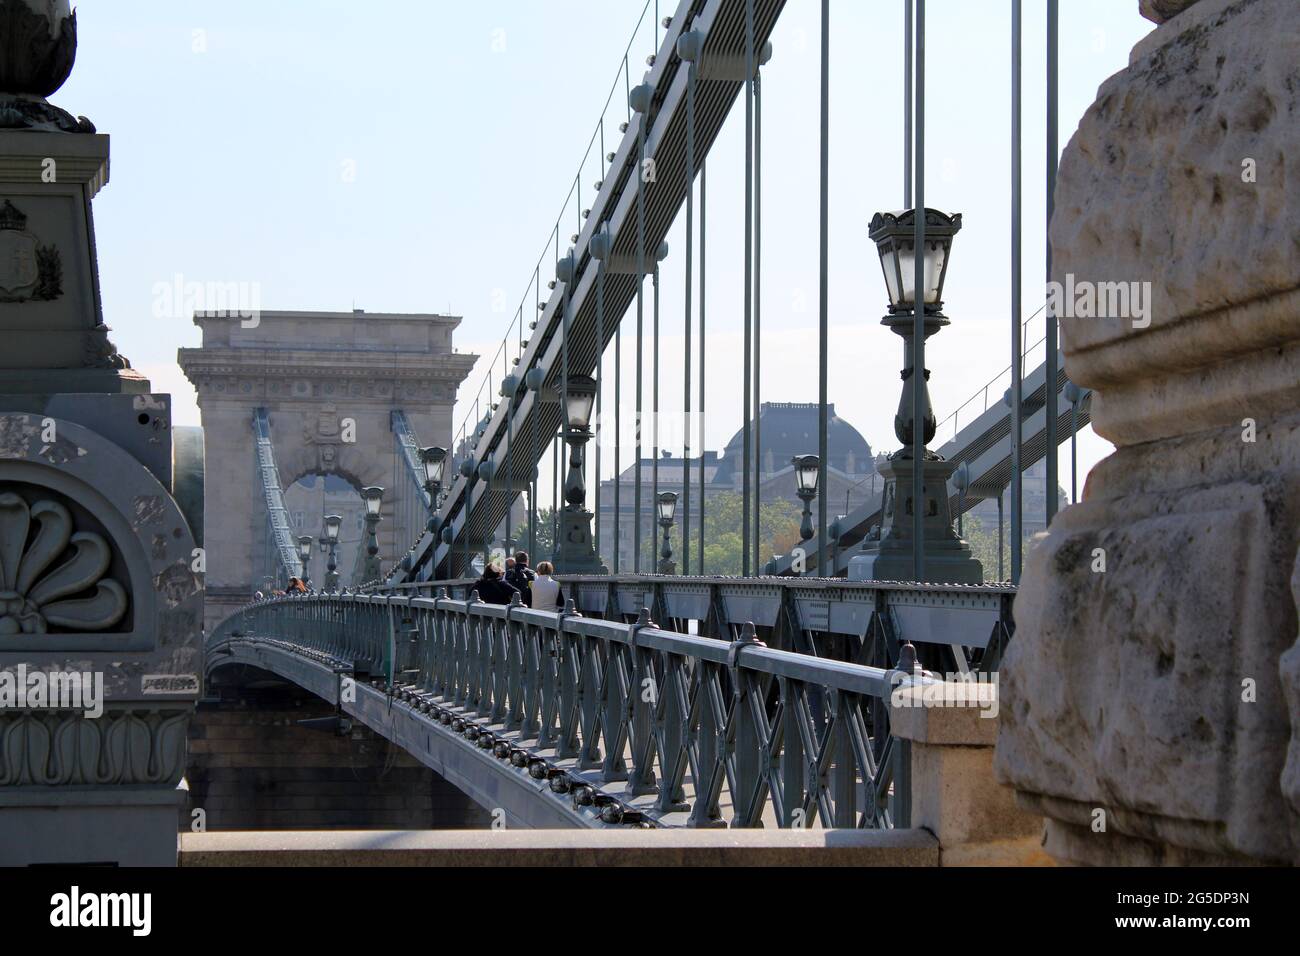 Suspension bridge in Budapest Stock Photo